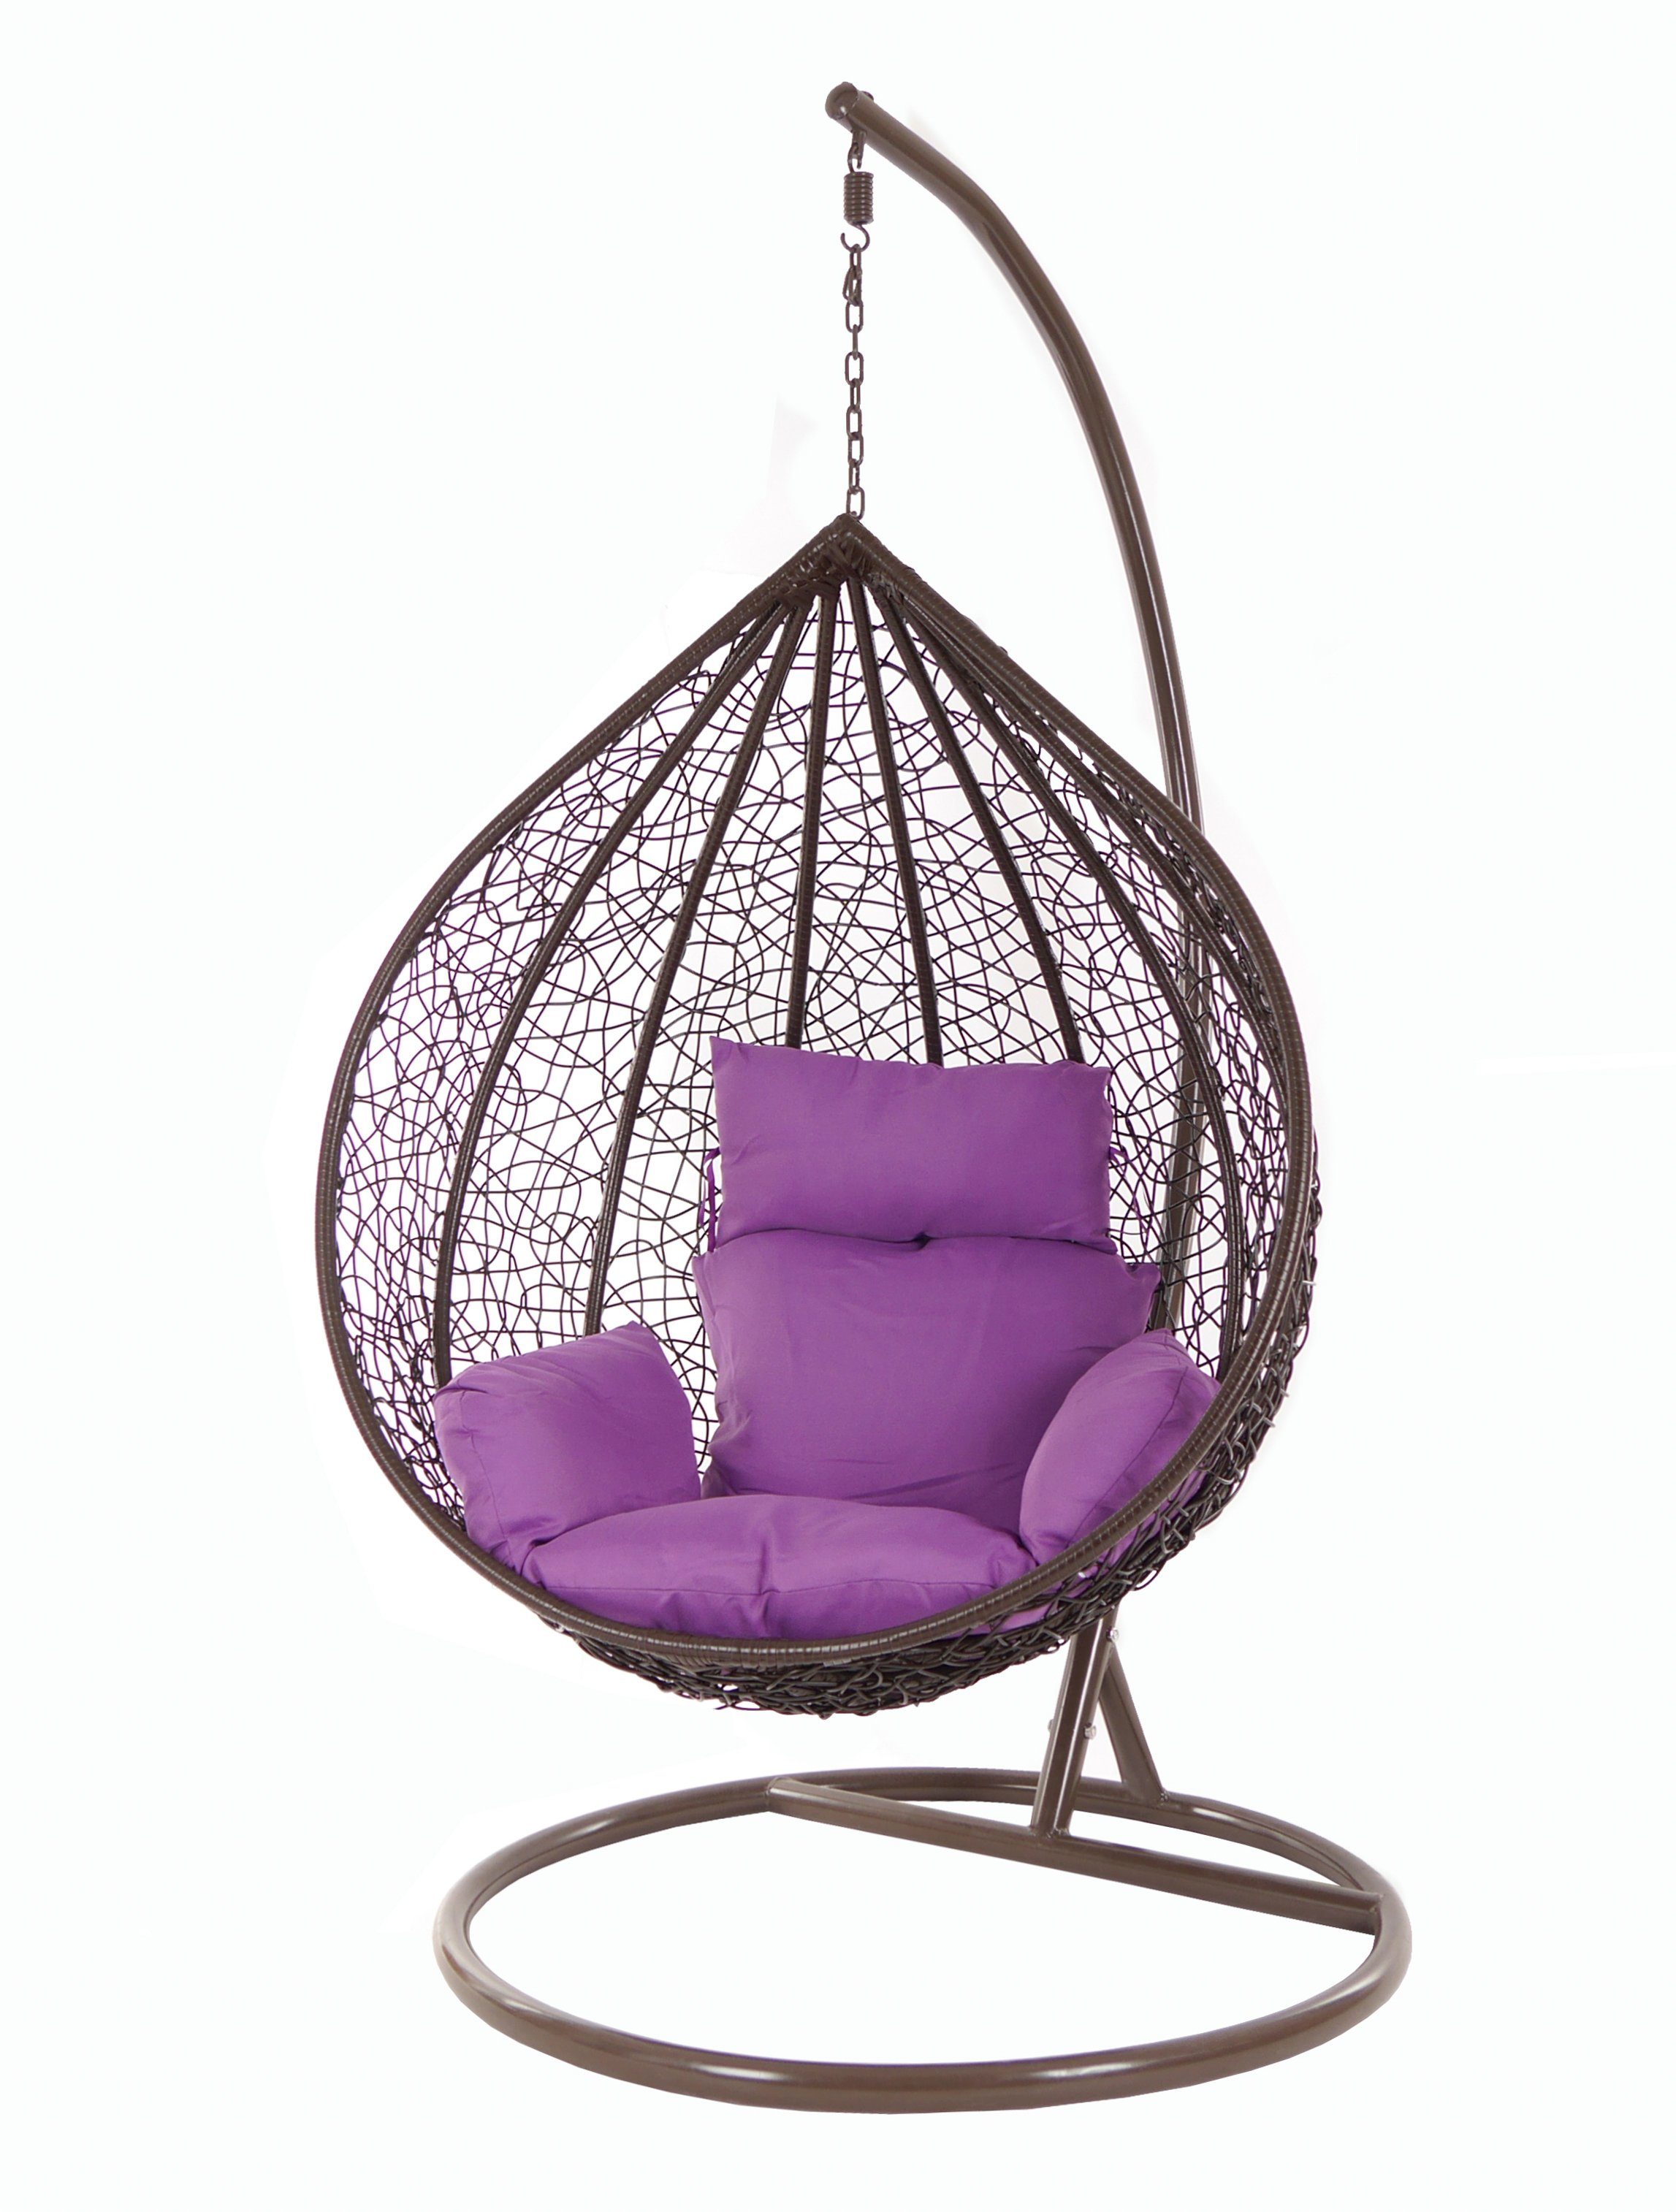 Schwebesessel, (4050 darkbrown, und Swing Gestell Hängesessel Chair, braun, KIDEO violet) Hängesessel Kissen Hängesessel MANACOR lila mit